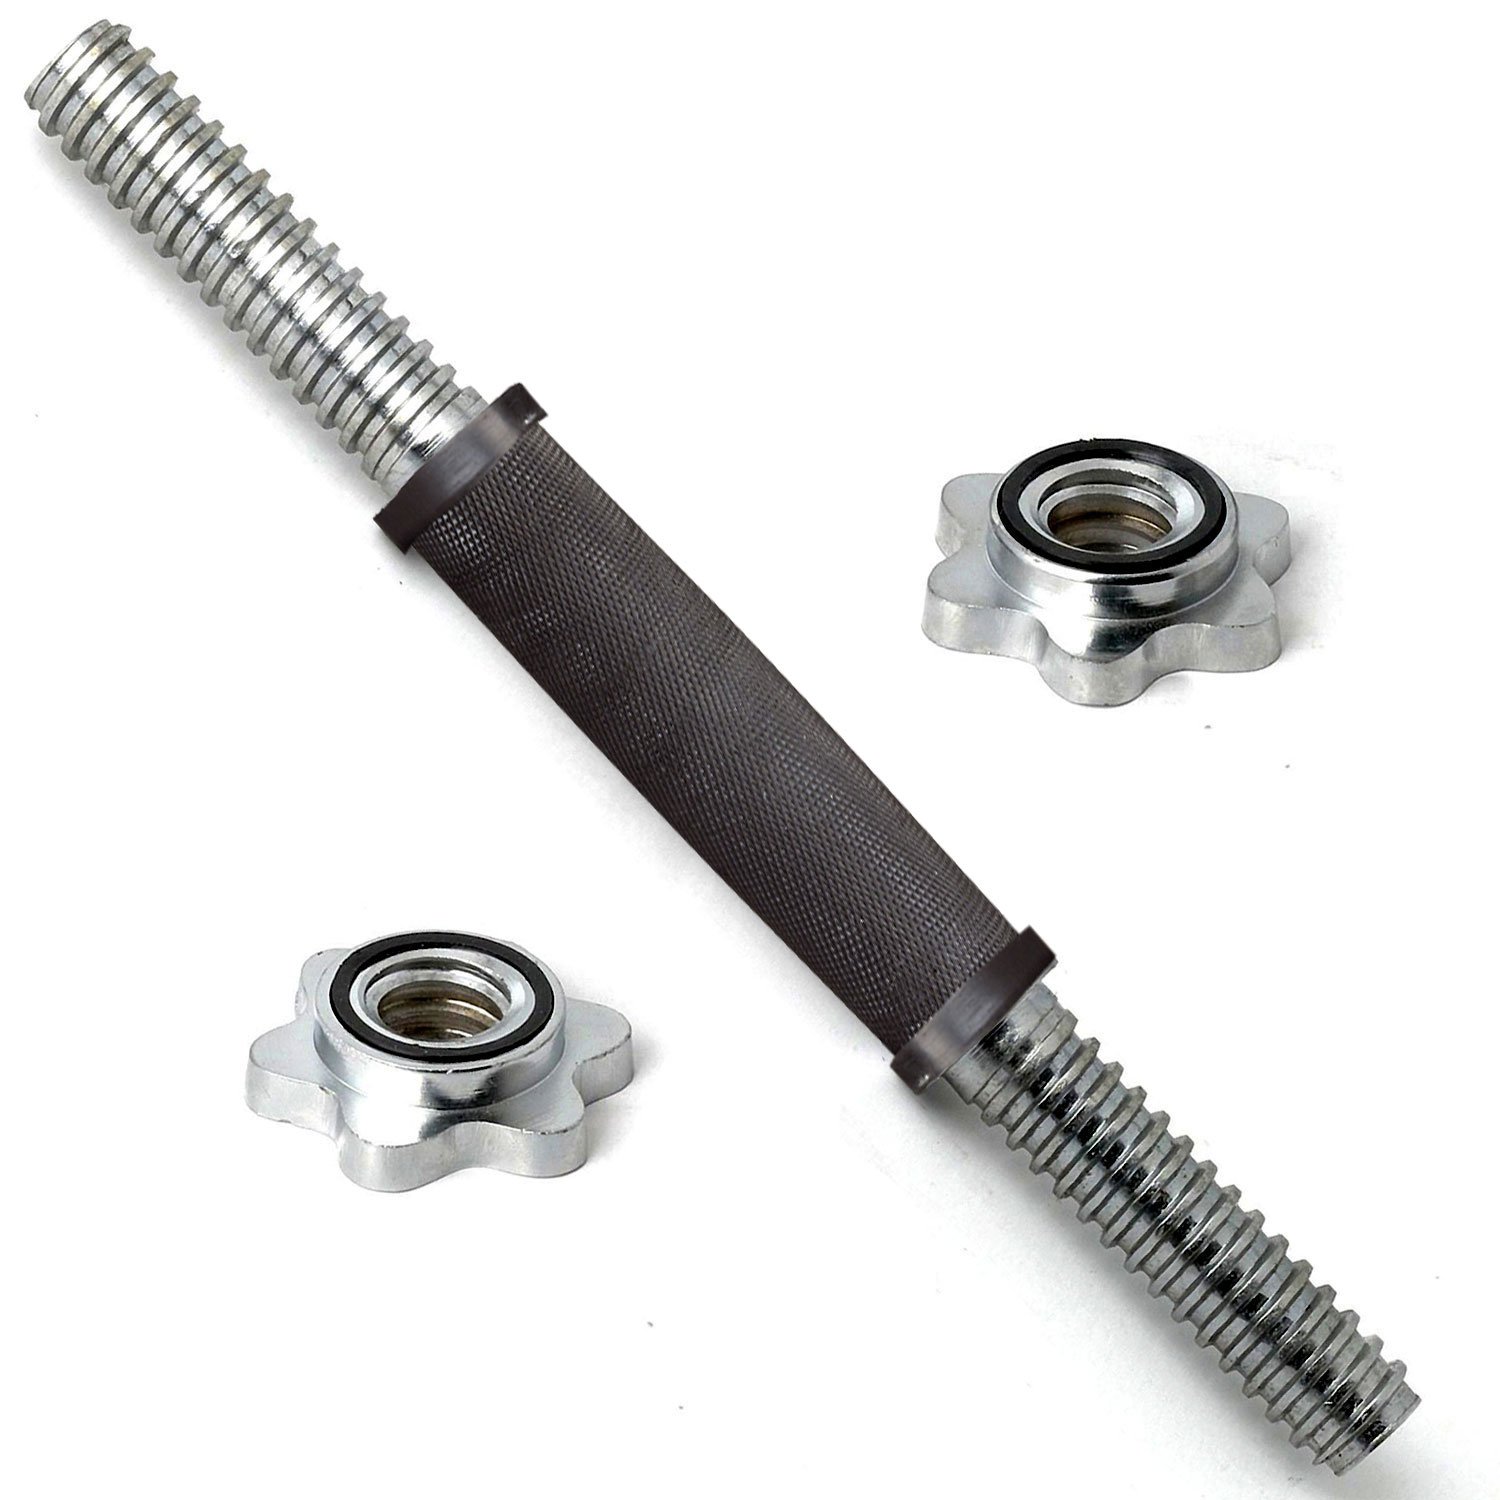 Гриф хромиромированный 350 мм 26 мм замок кольцевая гайка, ручка с резин. покрытием